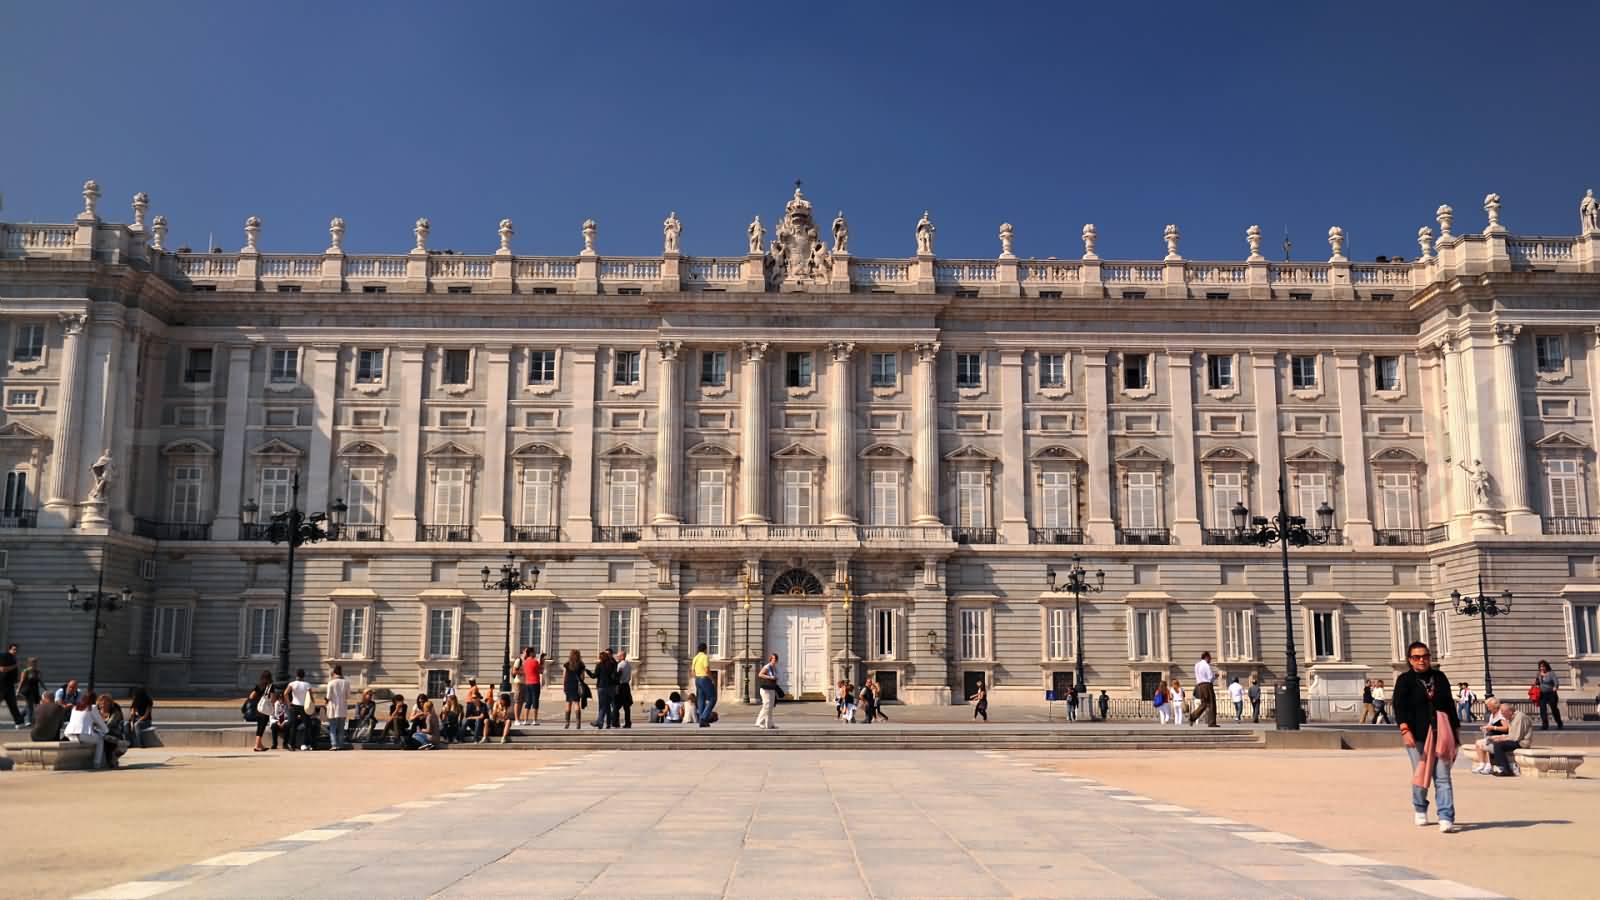 Madrid Royal Palace Facade View